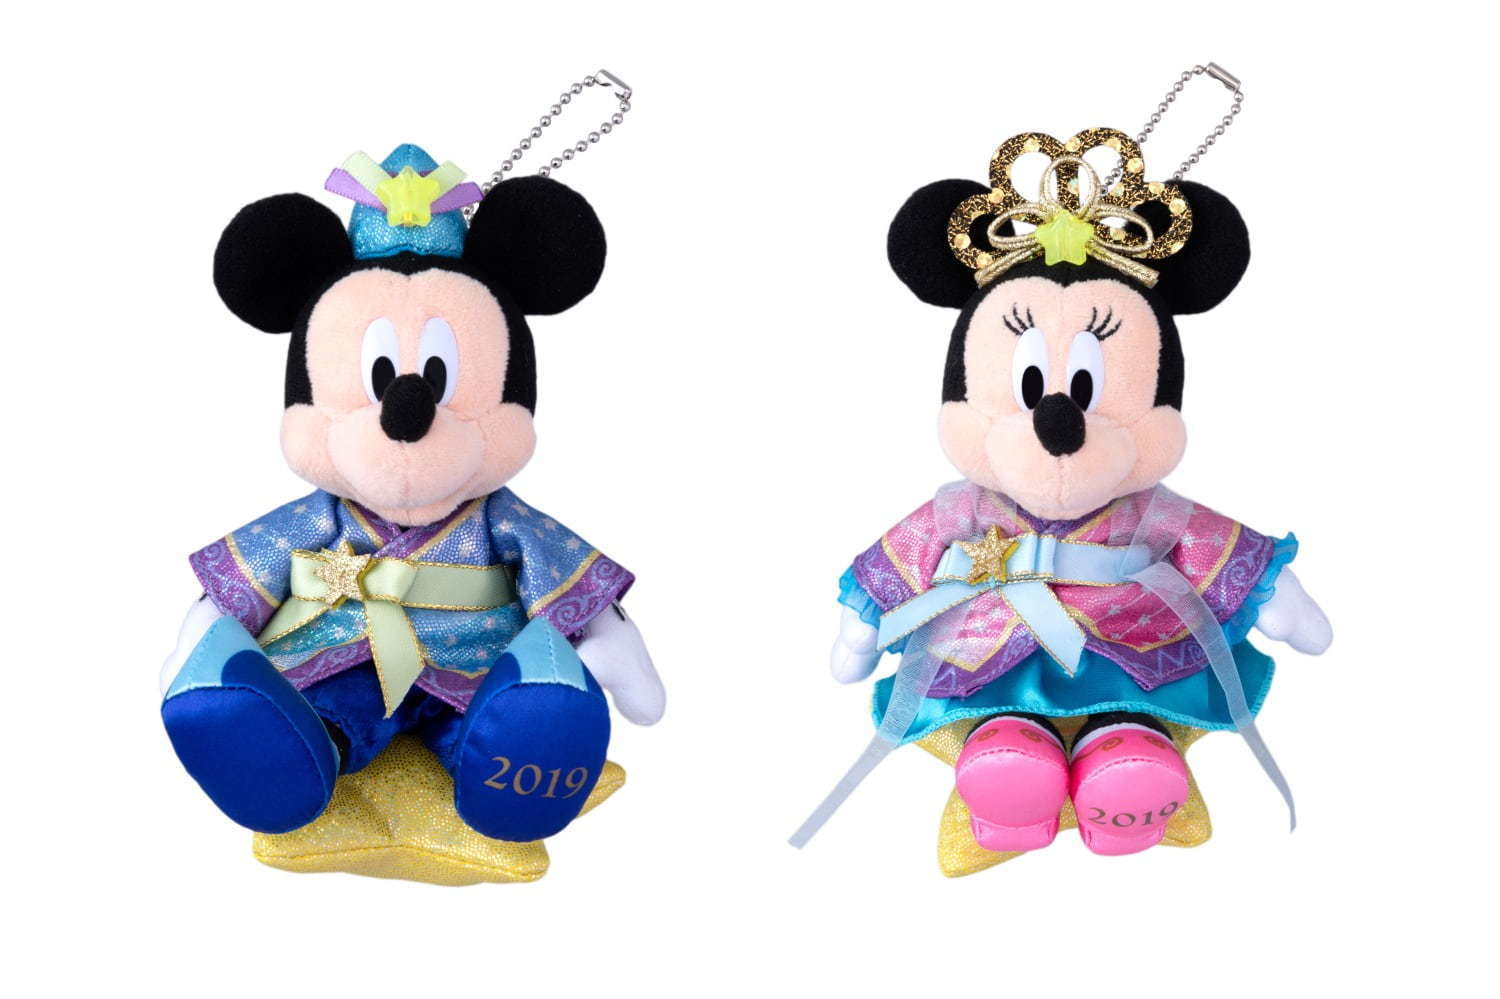 東京ディズニーリゾート ディズニー七夕デイズ 織姫 彦星に扮したミッキーとミニー登場 限定グッズも ファッションプレス